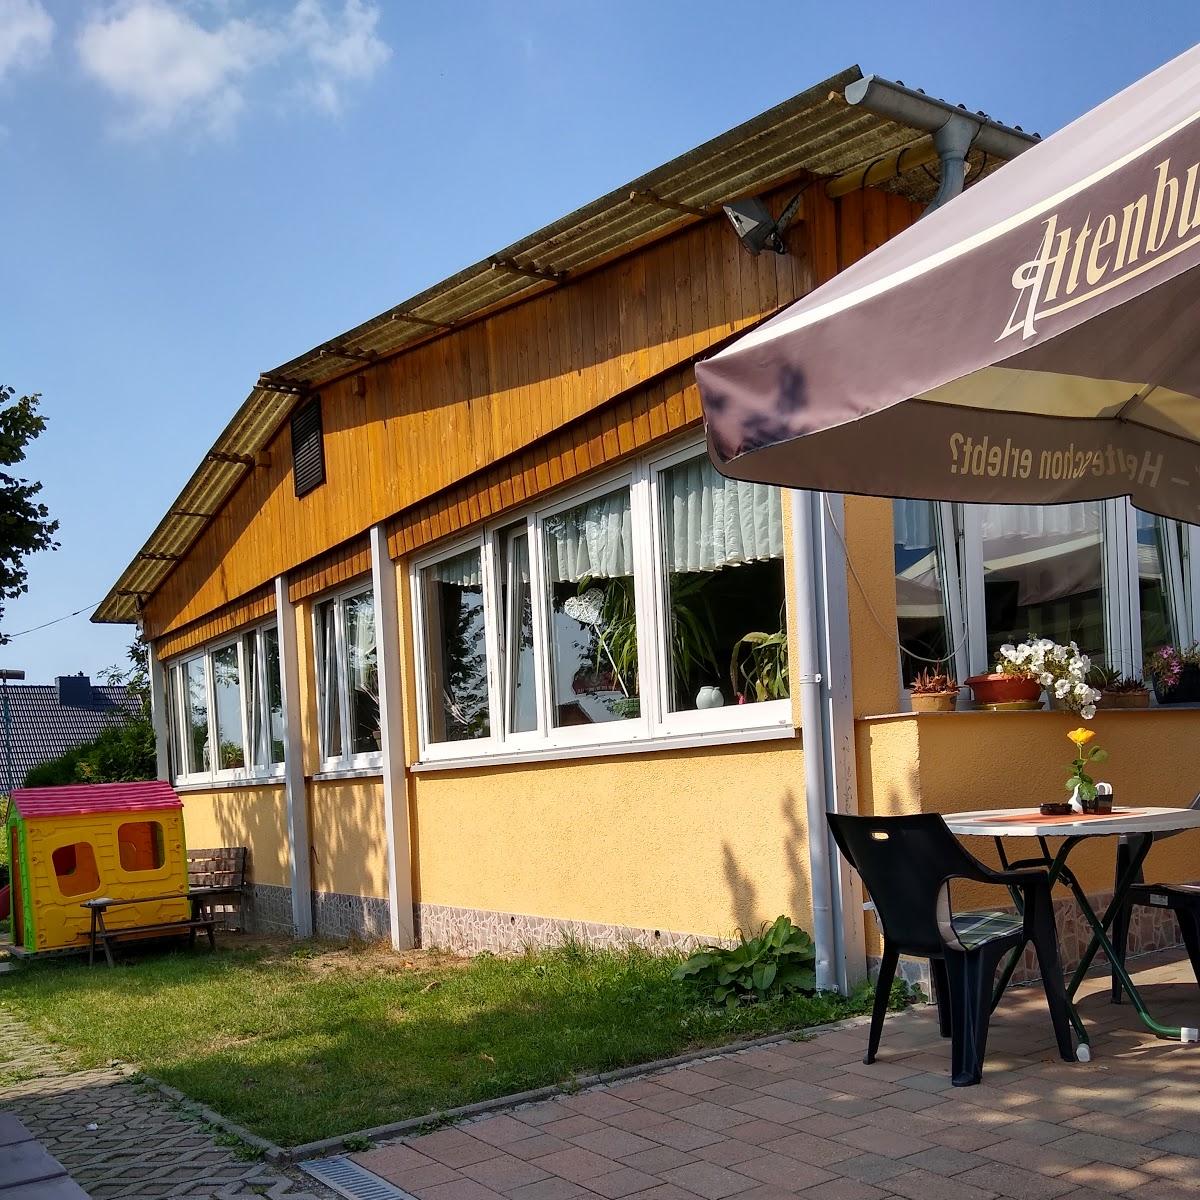 Restaurant "Poschwitzer Höhe" in Altenburg